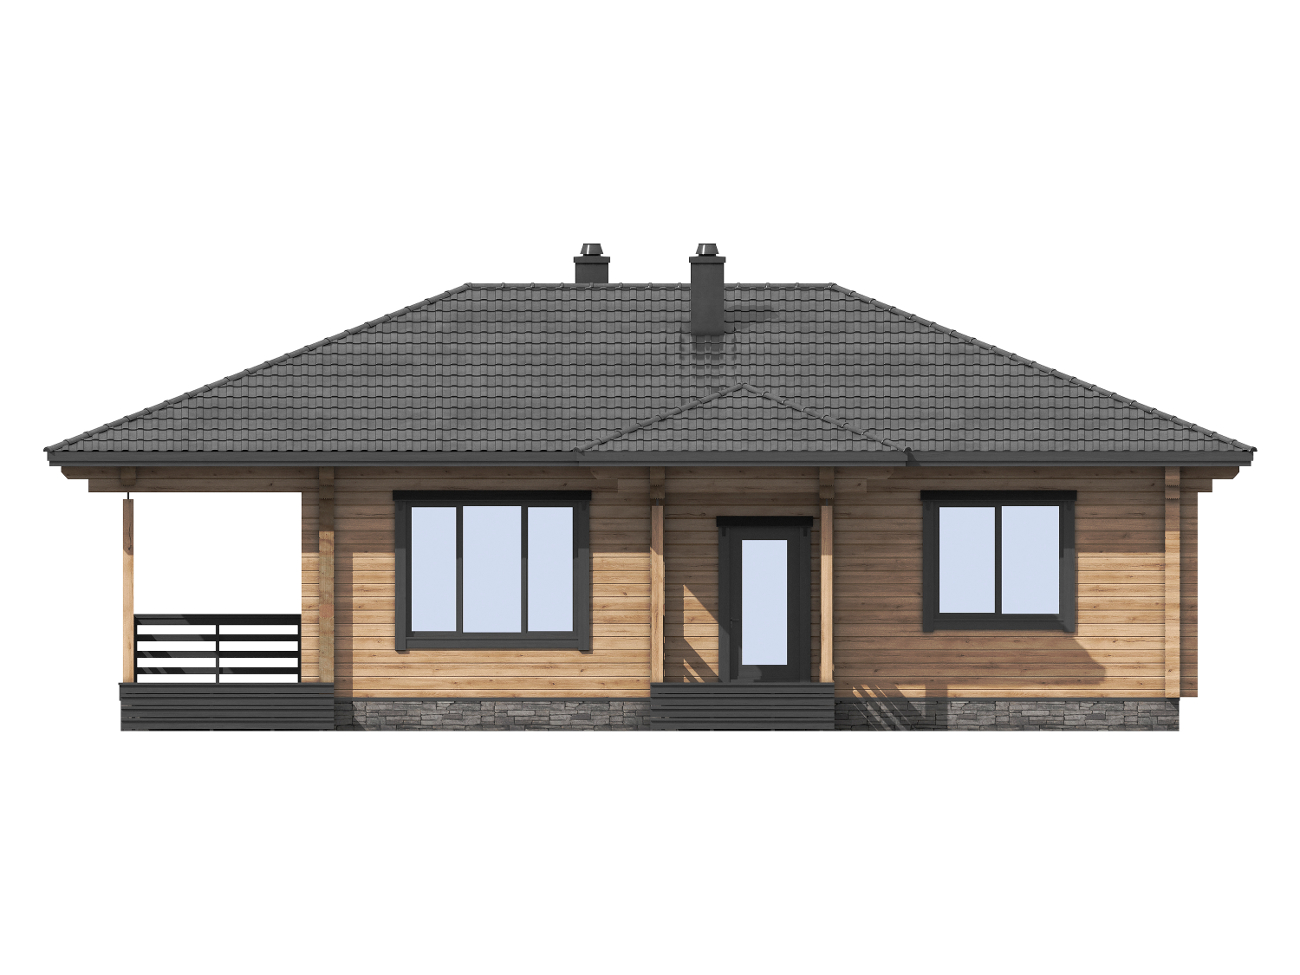 1-47b Проект одноэтажного деревянного дома для отдыха